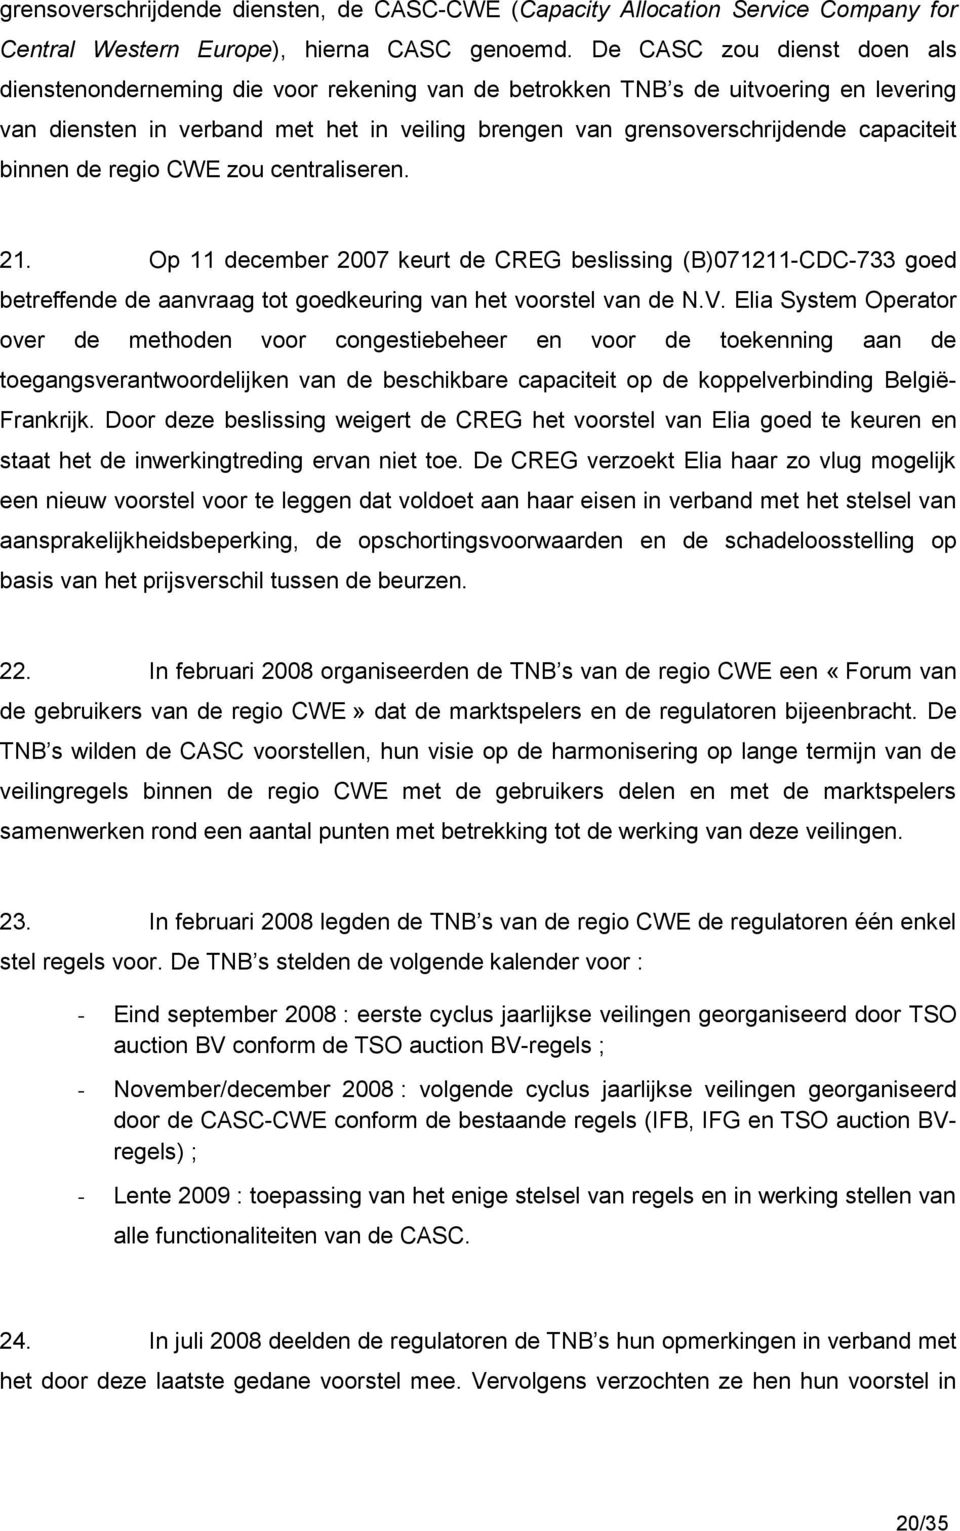 capaciteit binnen de regio CWE zou centraliseren. 21. Op 11 december 2007 keurt de CREG beslissing (B)071211-CDC-733 goed betreffende de aanvraag tot goedkeuring van het voorstel van de N.V.